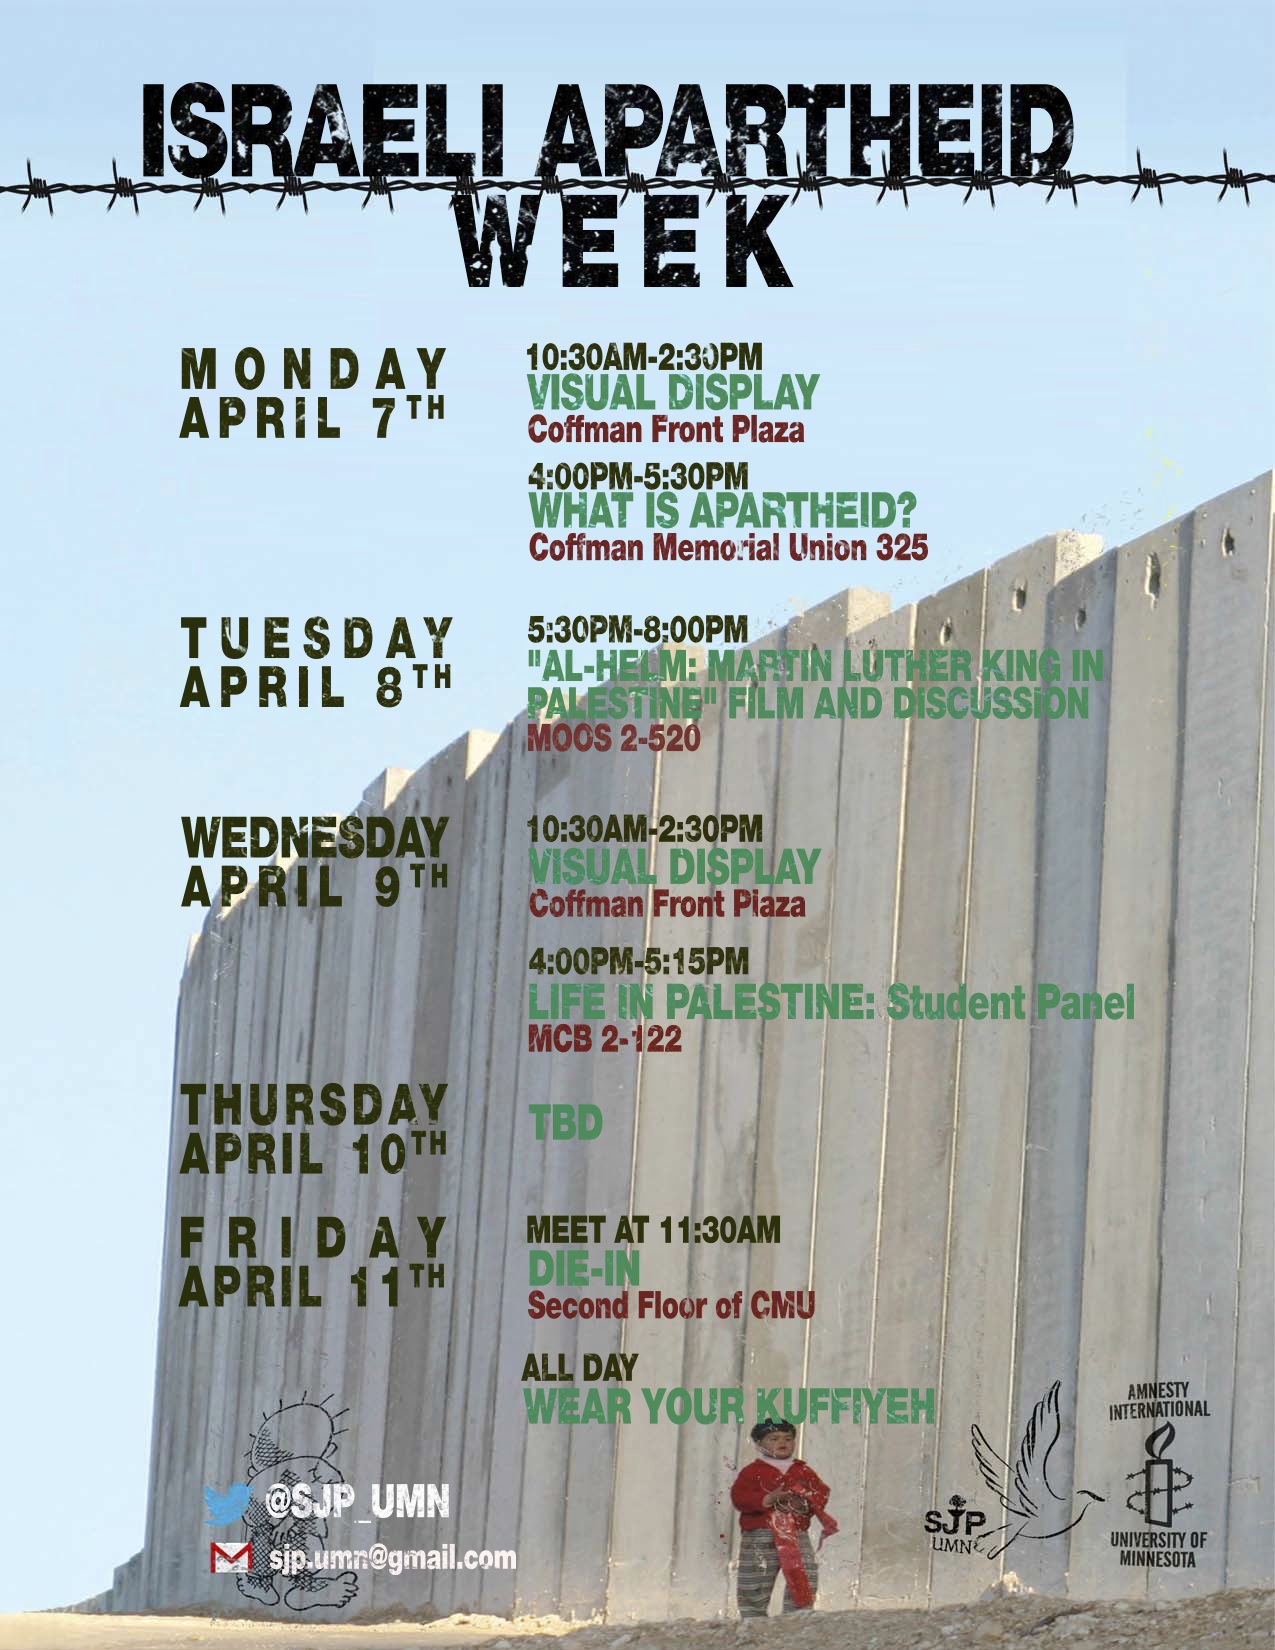 University of Minnesota Israeli Apartheid Week